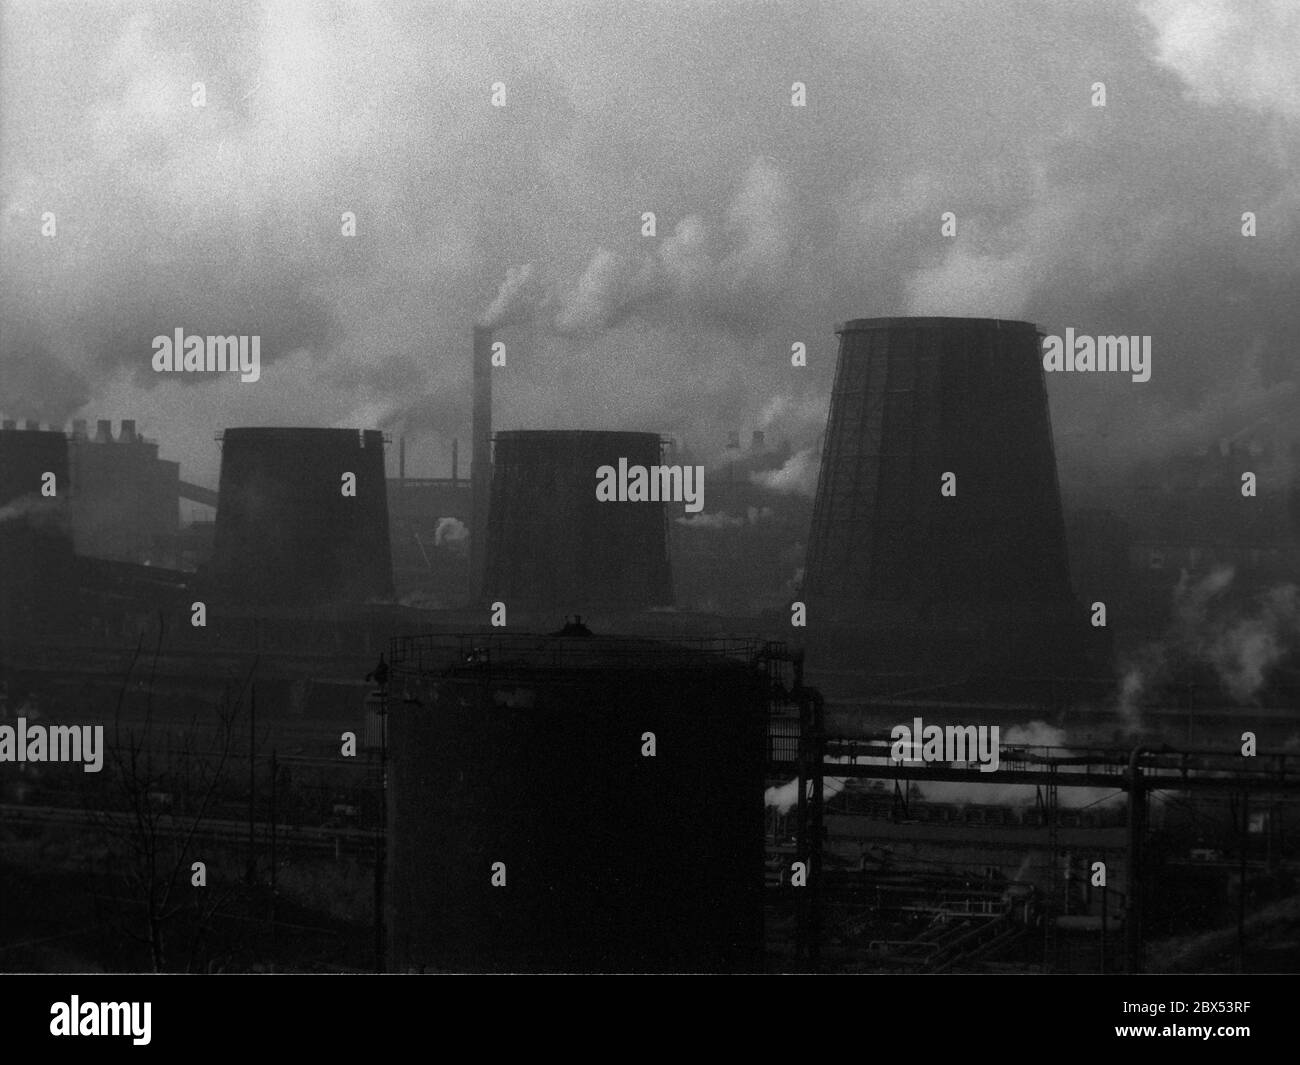 Sajonia / GDR / Energía / 1990 Amanecer en la cosechadora de lignito Espenhain cerca de Leipzig en marzo de 1990, varias plantas químicas basadas en lignito. Fue considerado el mayor tirón de tierra de la RDA y fue cerrado. Luego perteneció a los Treuhand y fue cerrado. // lignito / Medio ambiente / Aire / Carbón / Estados de ánimo / Economía de la RDA / [traducción automática] Foto de stock